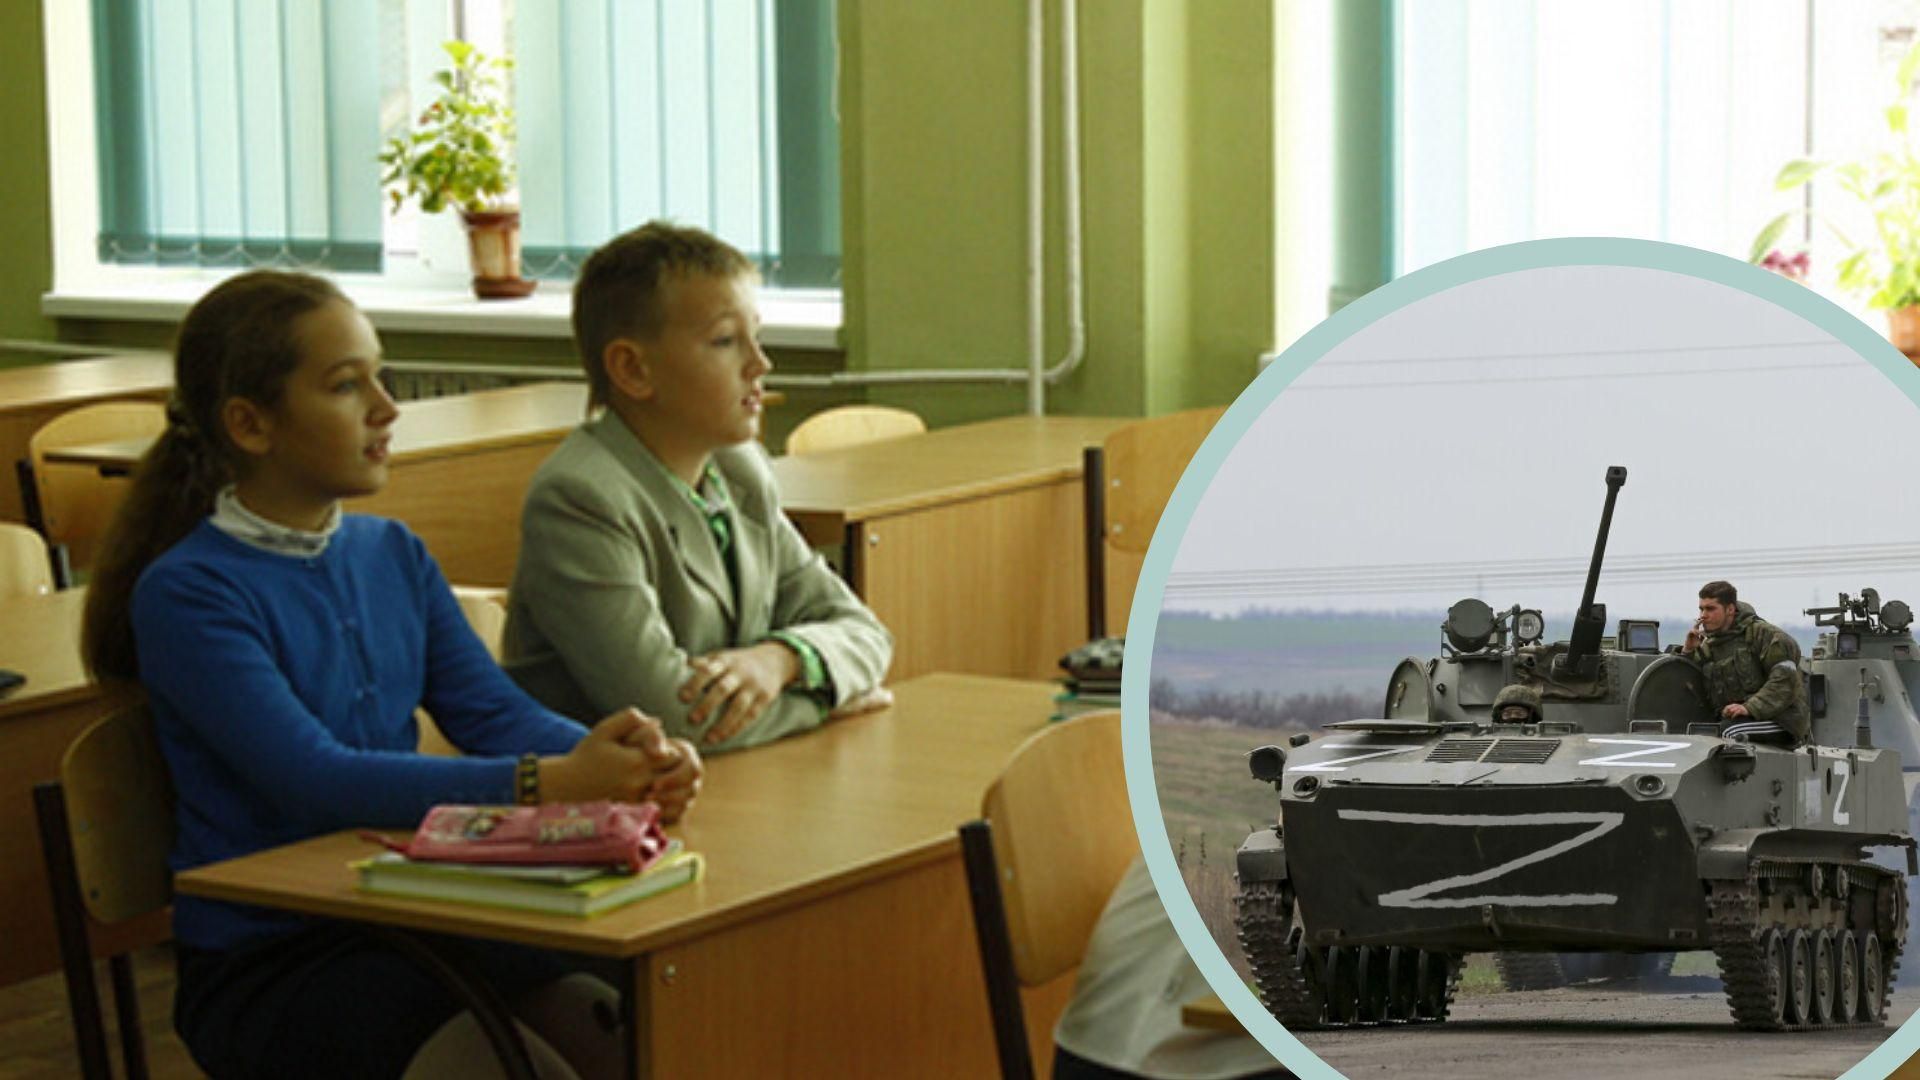 В Мелитополе россияне хотят отбирать родительские права, если дети не пойдут в их школу